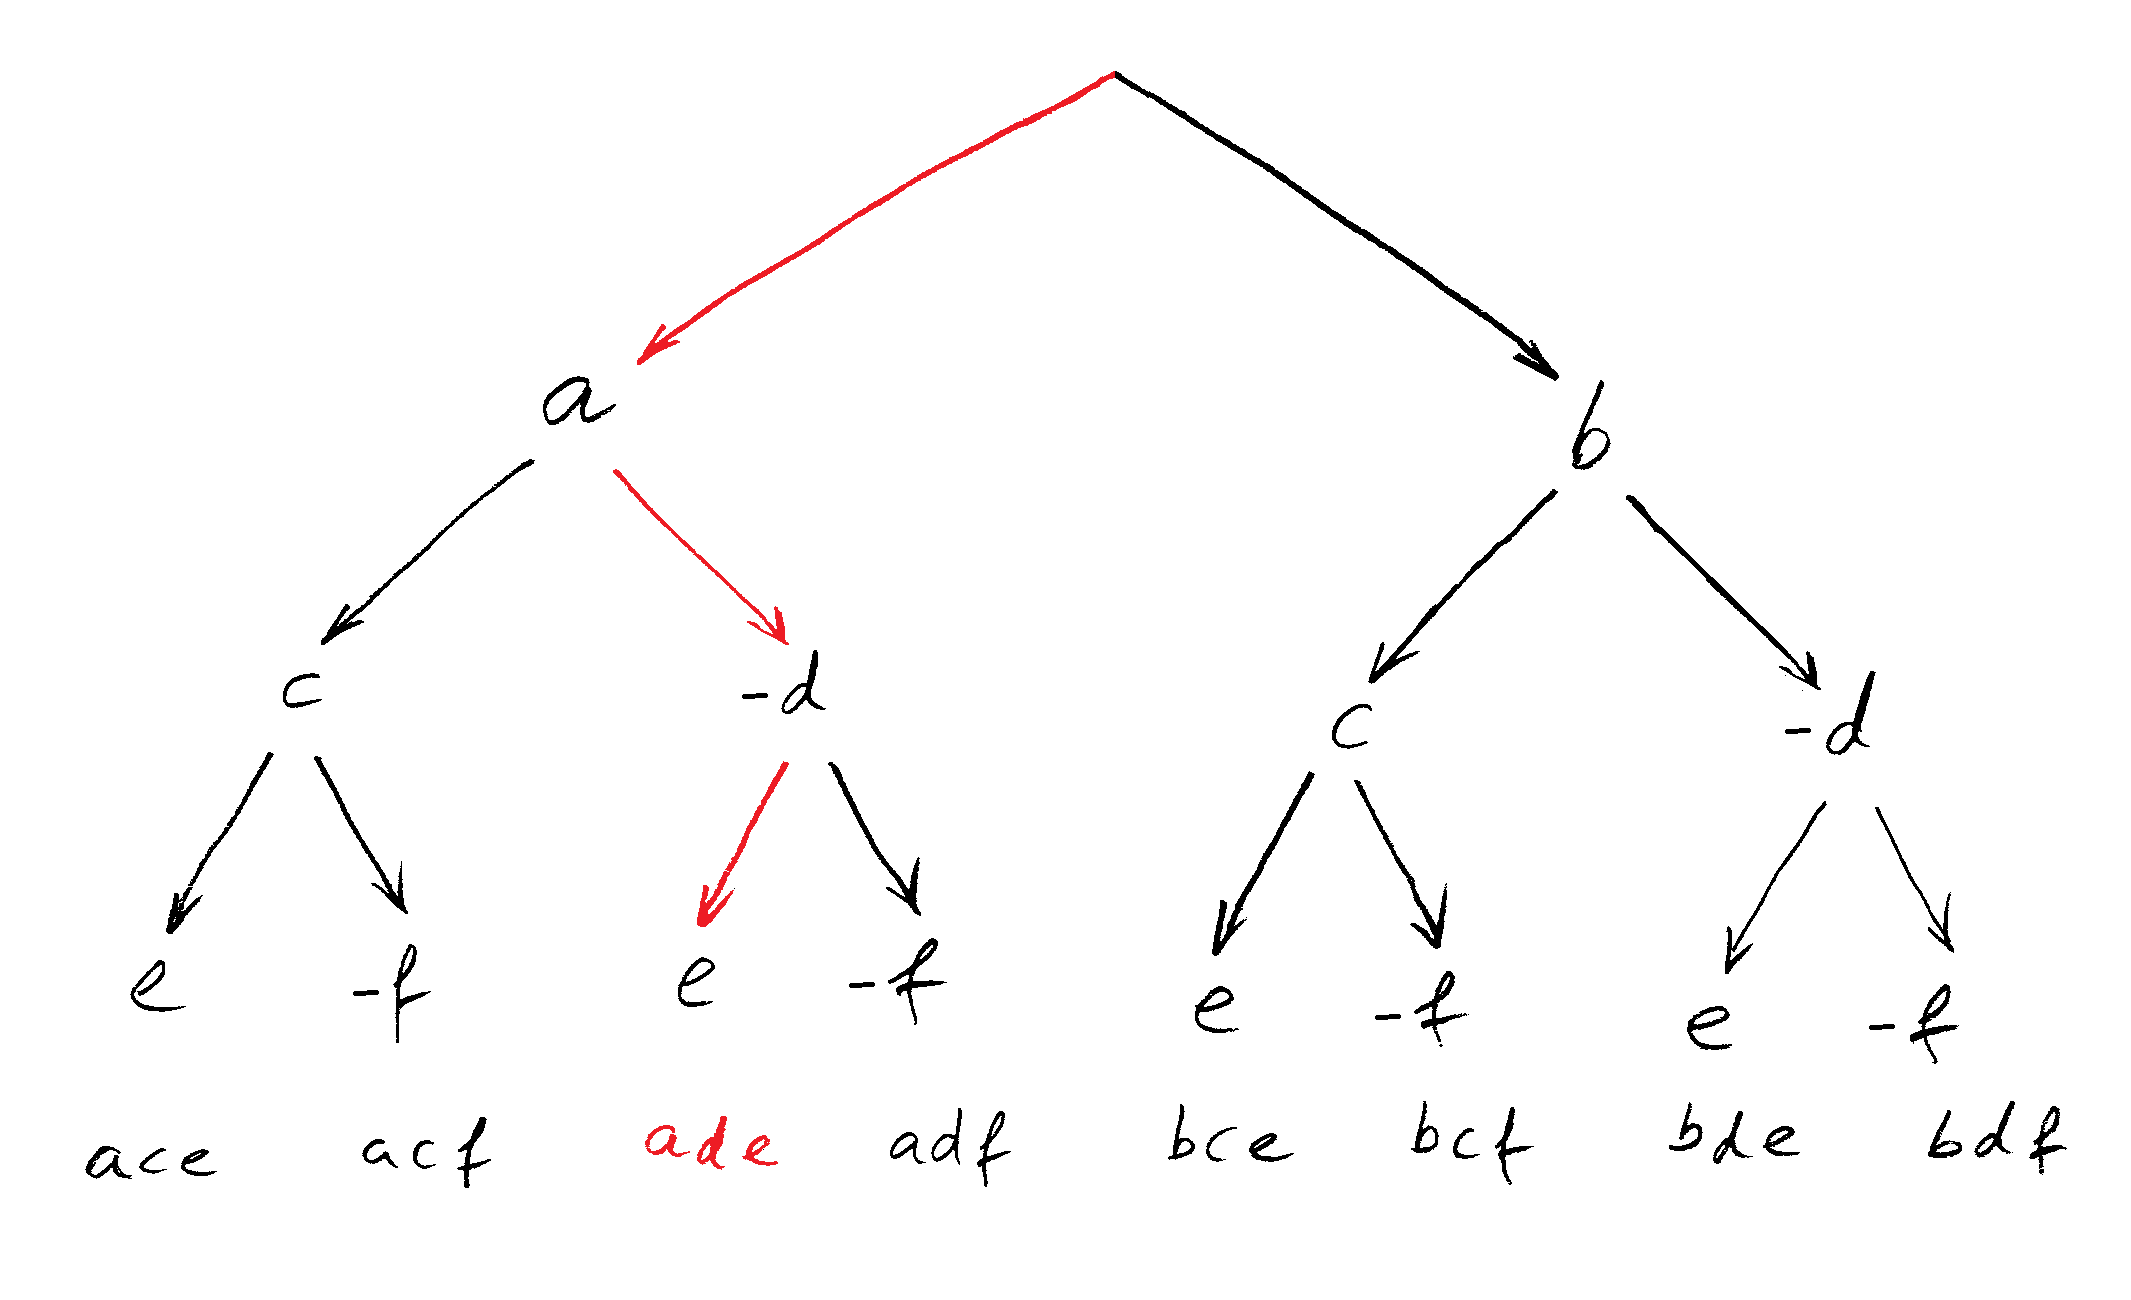 Baum-Schema für das zweite Beispiel